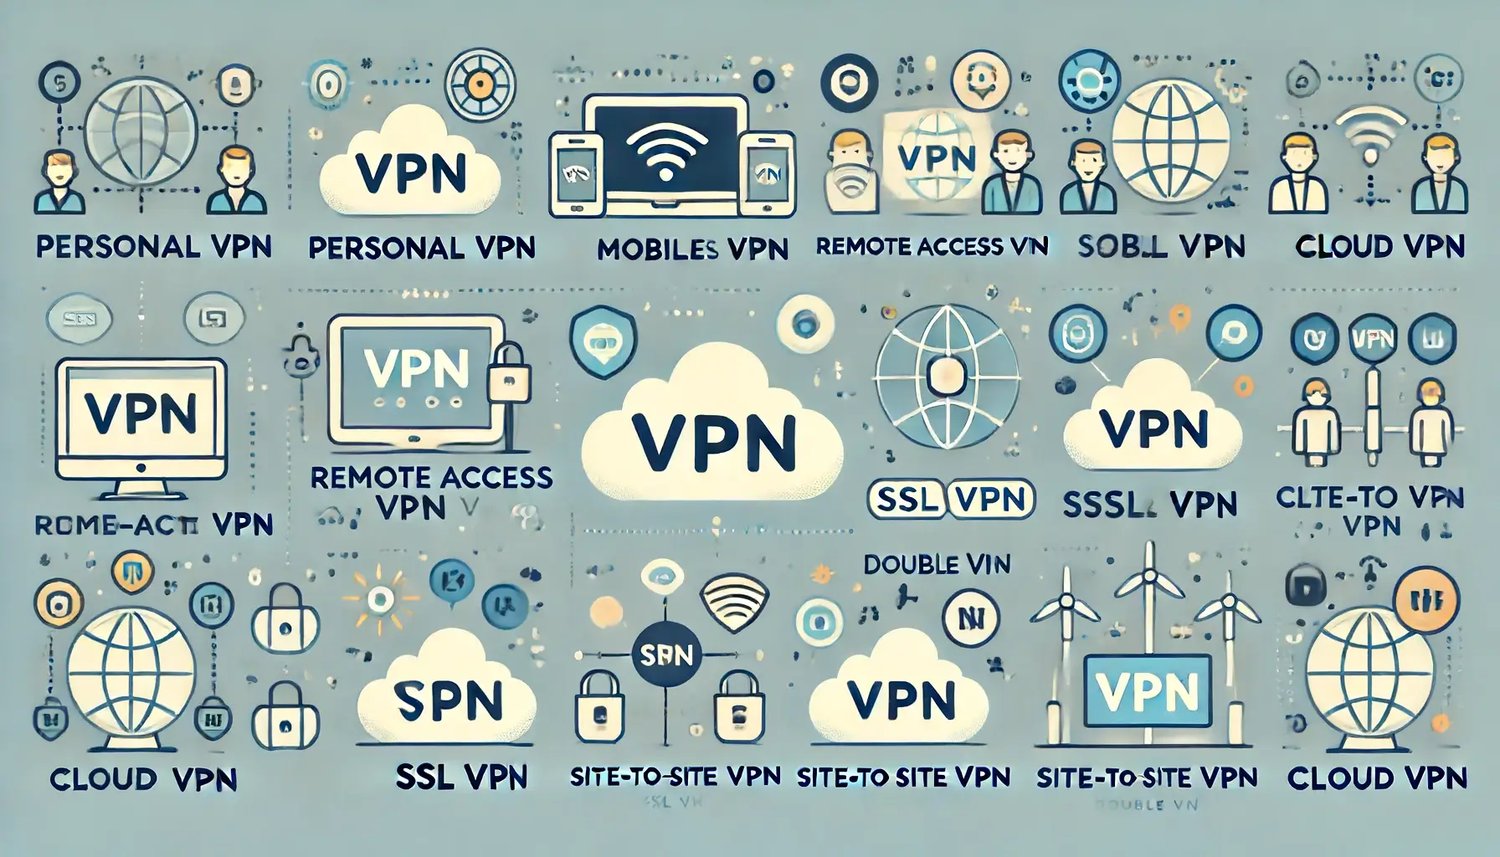 Erkunden verschiedener Arten von VPNs und wann sie verwendet werden sollen